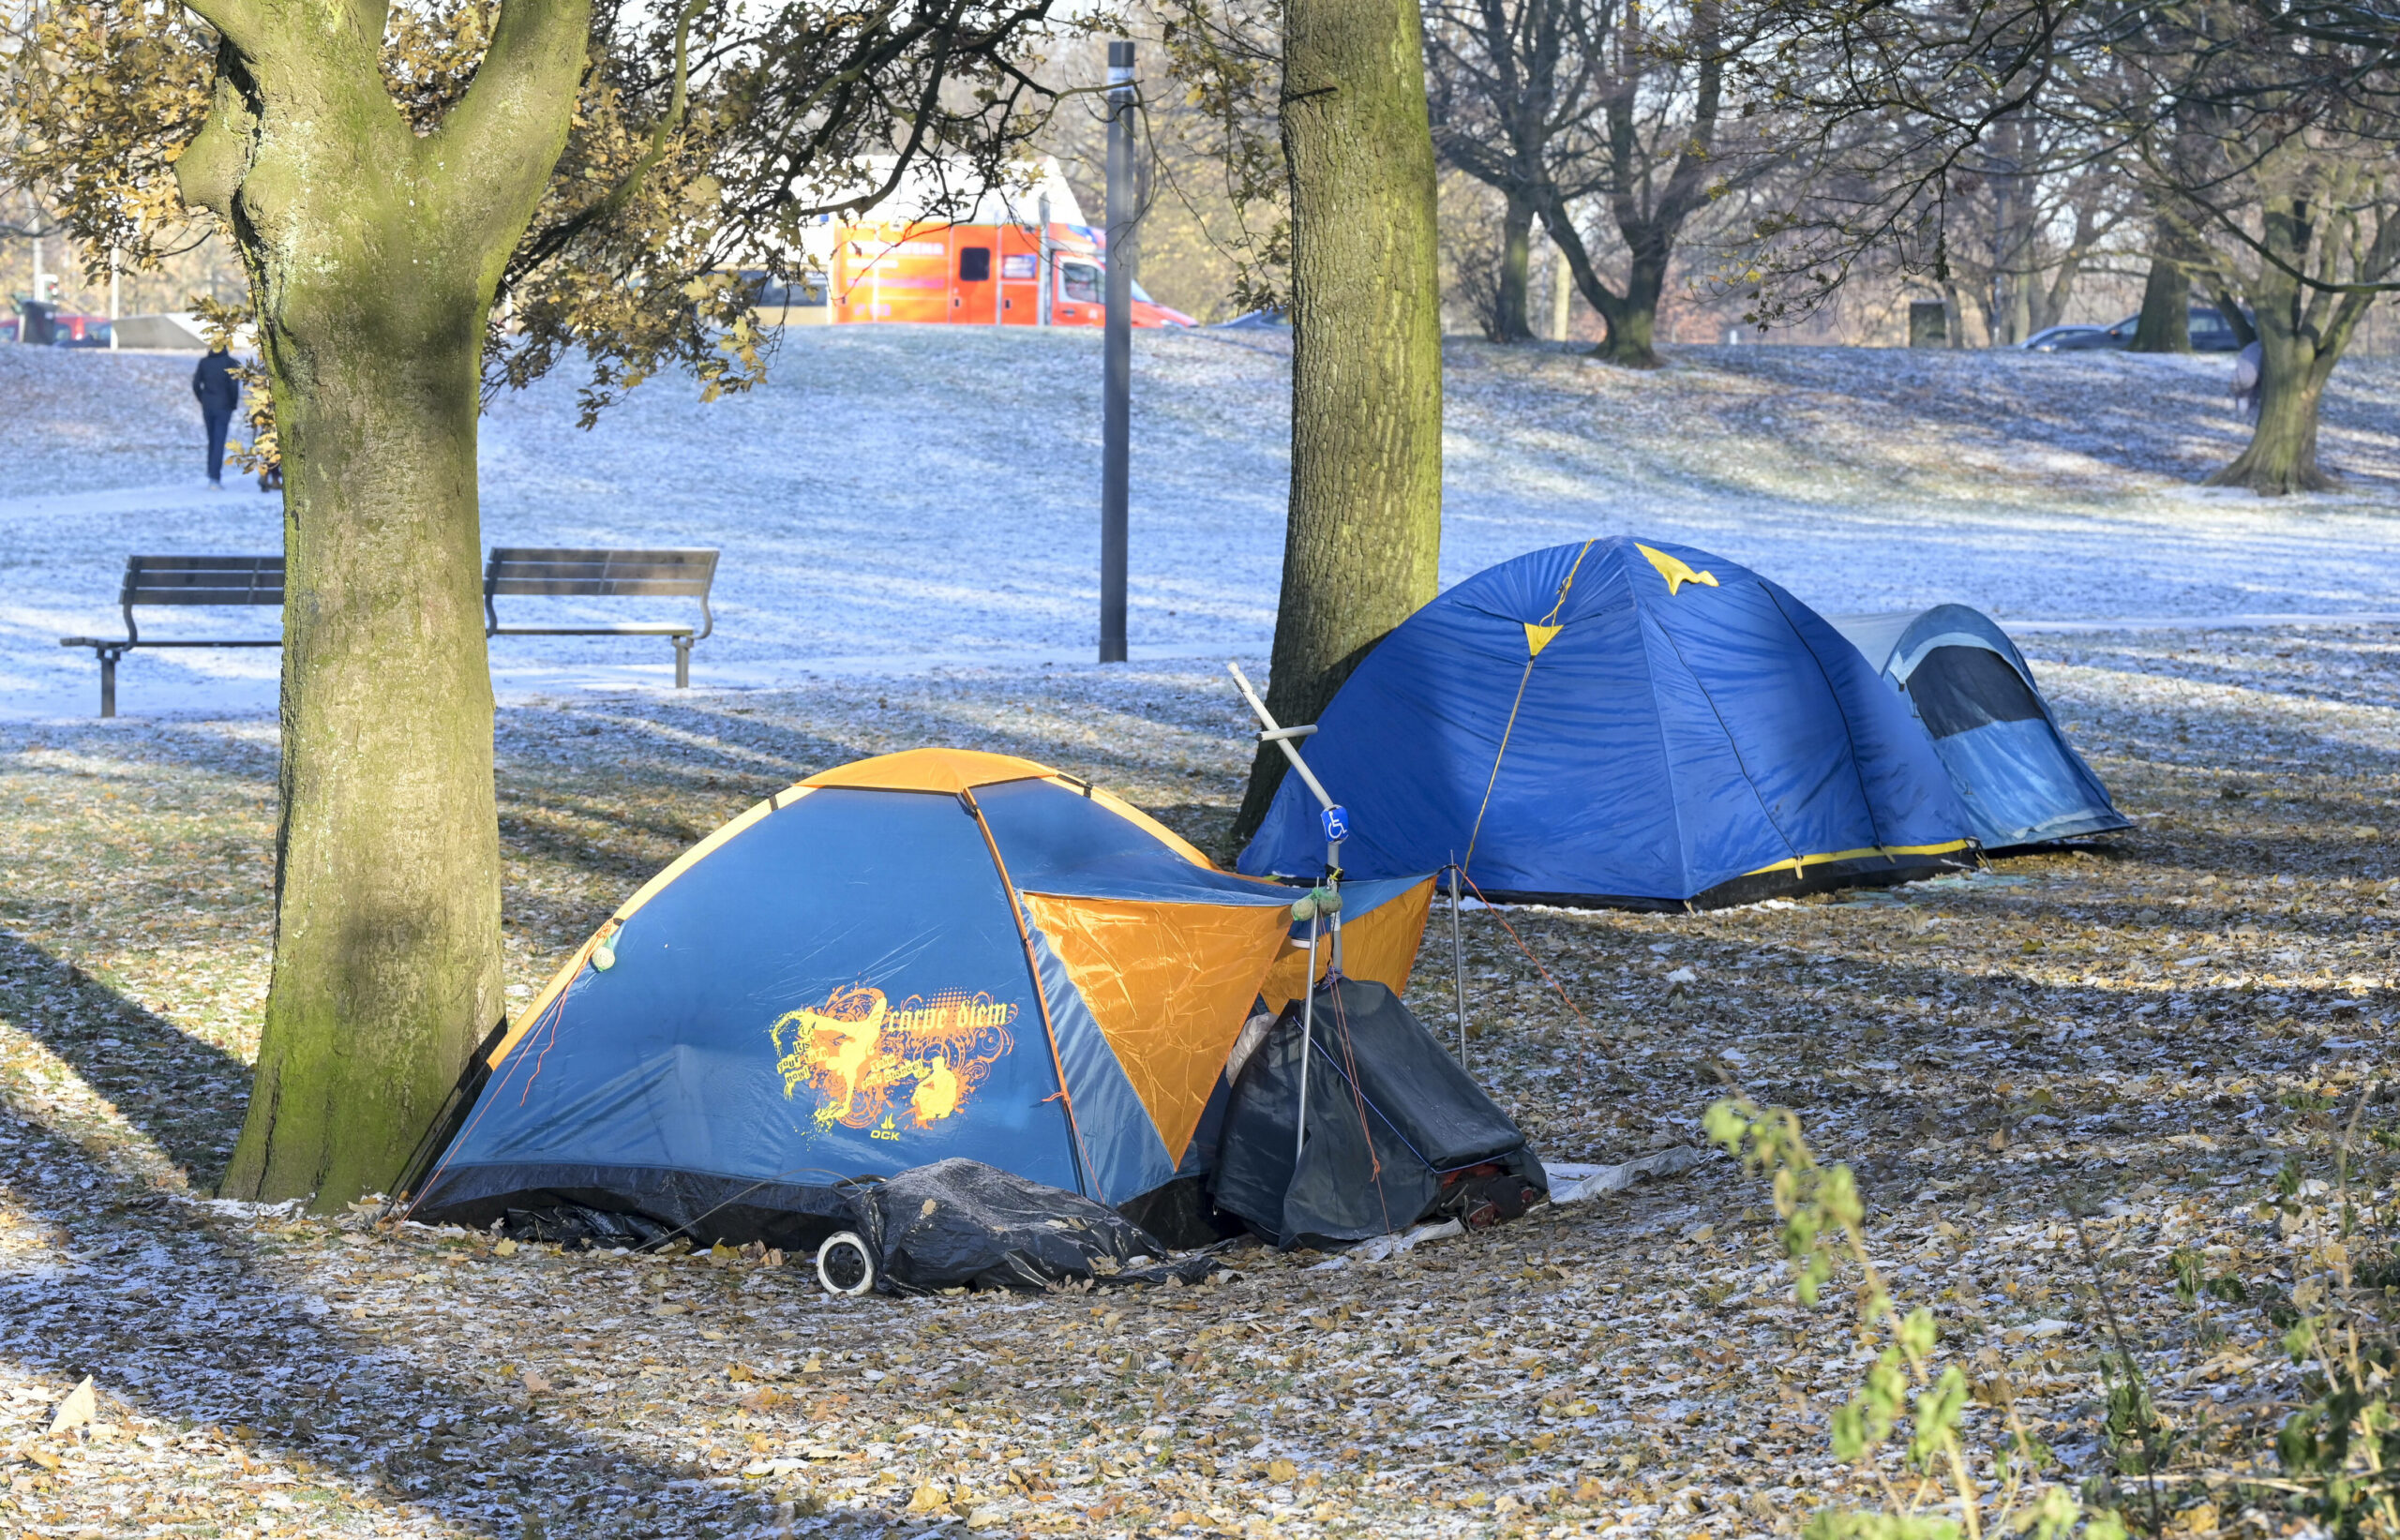 Zelte obdachloser Personen stehen in einem Park in Hamburg. (Symbolbild)